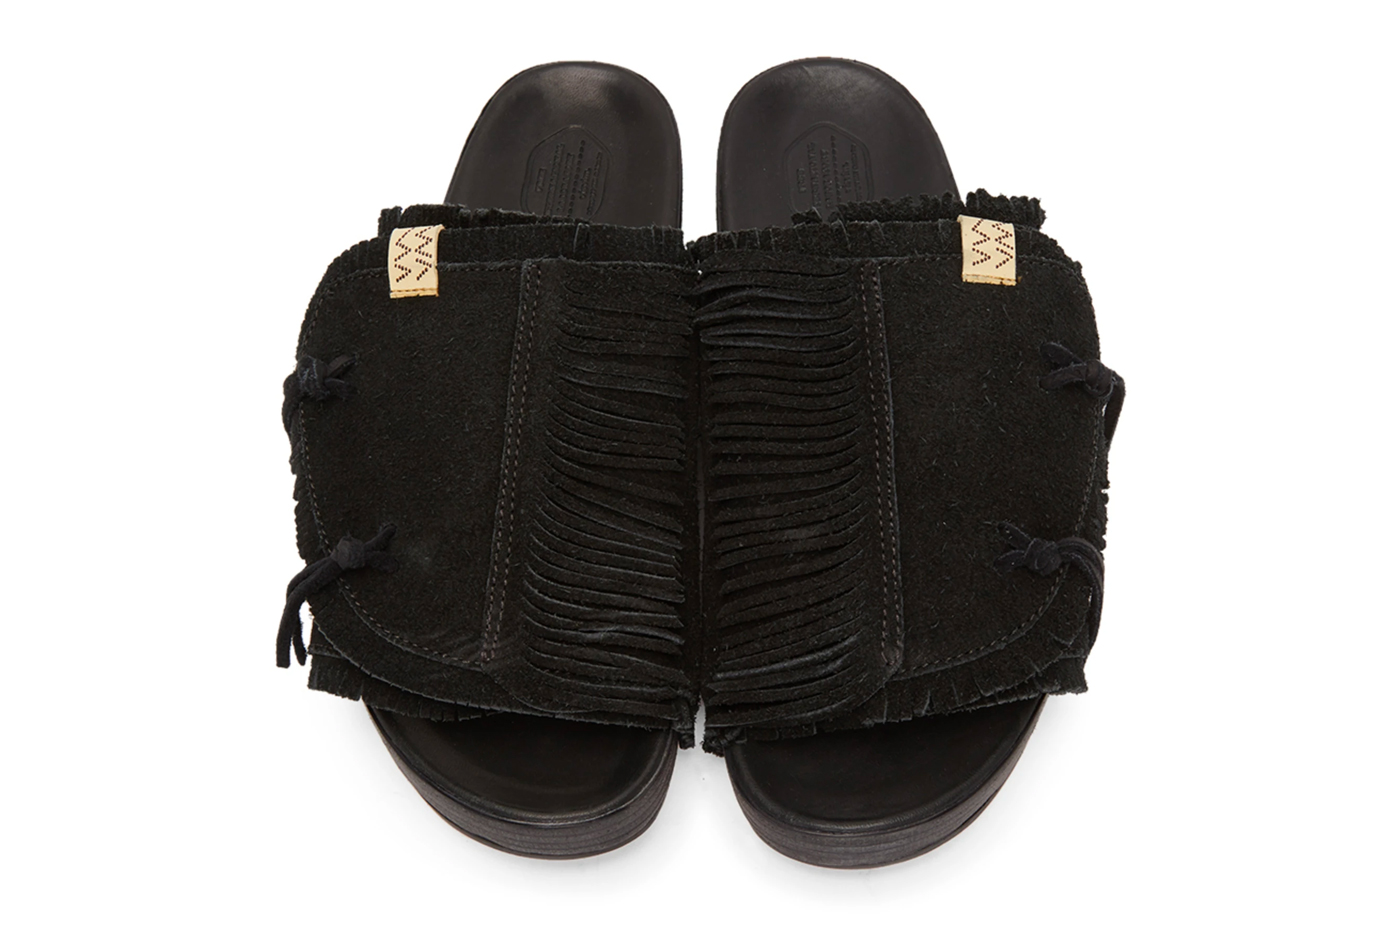 https://hypebeast.com/image/2020/05/visvim-christo-shaman-folk-sandals-in-black-release-002.jpg